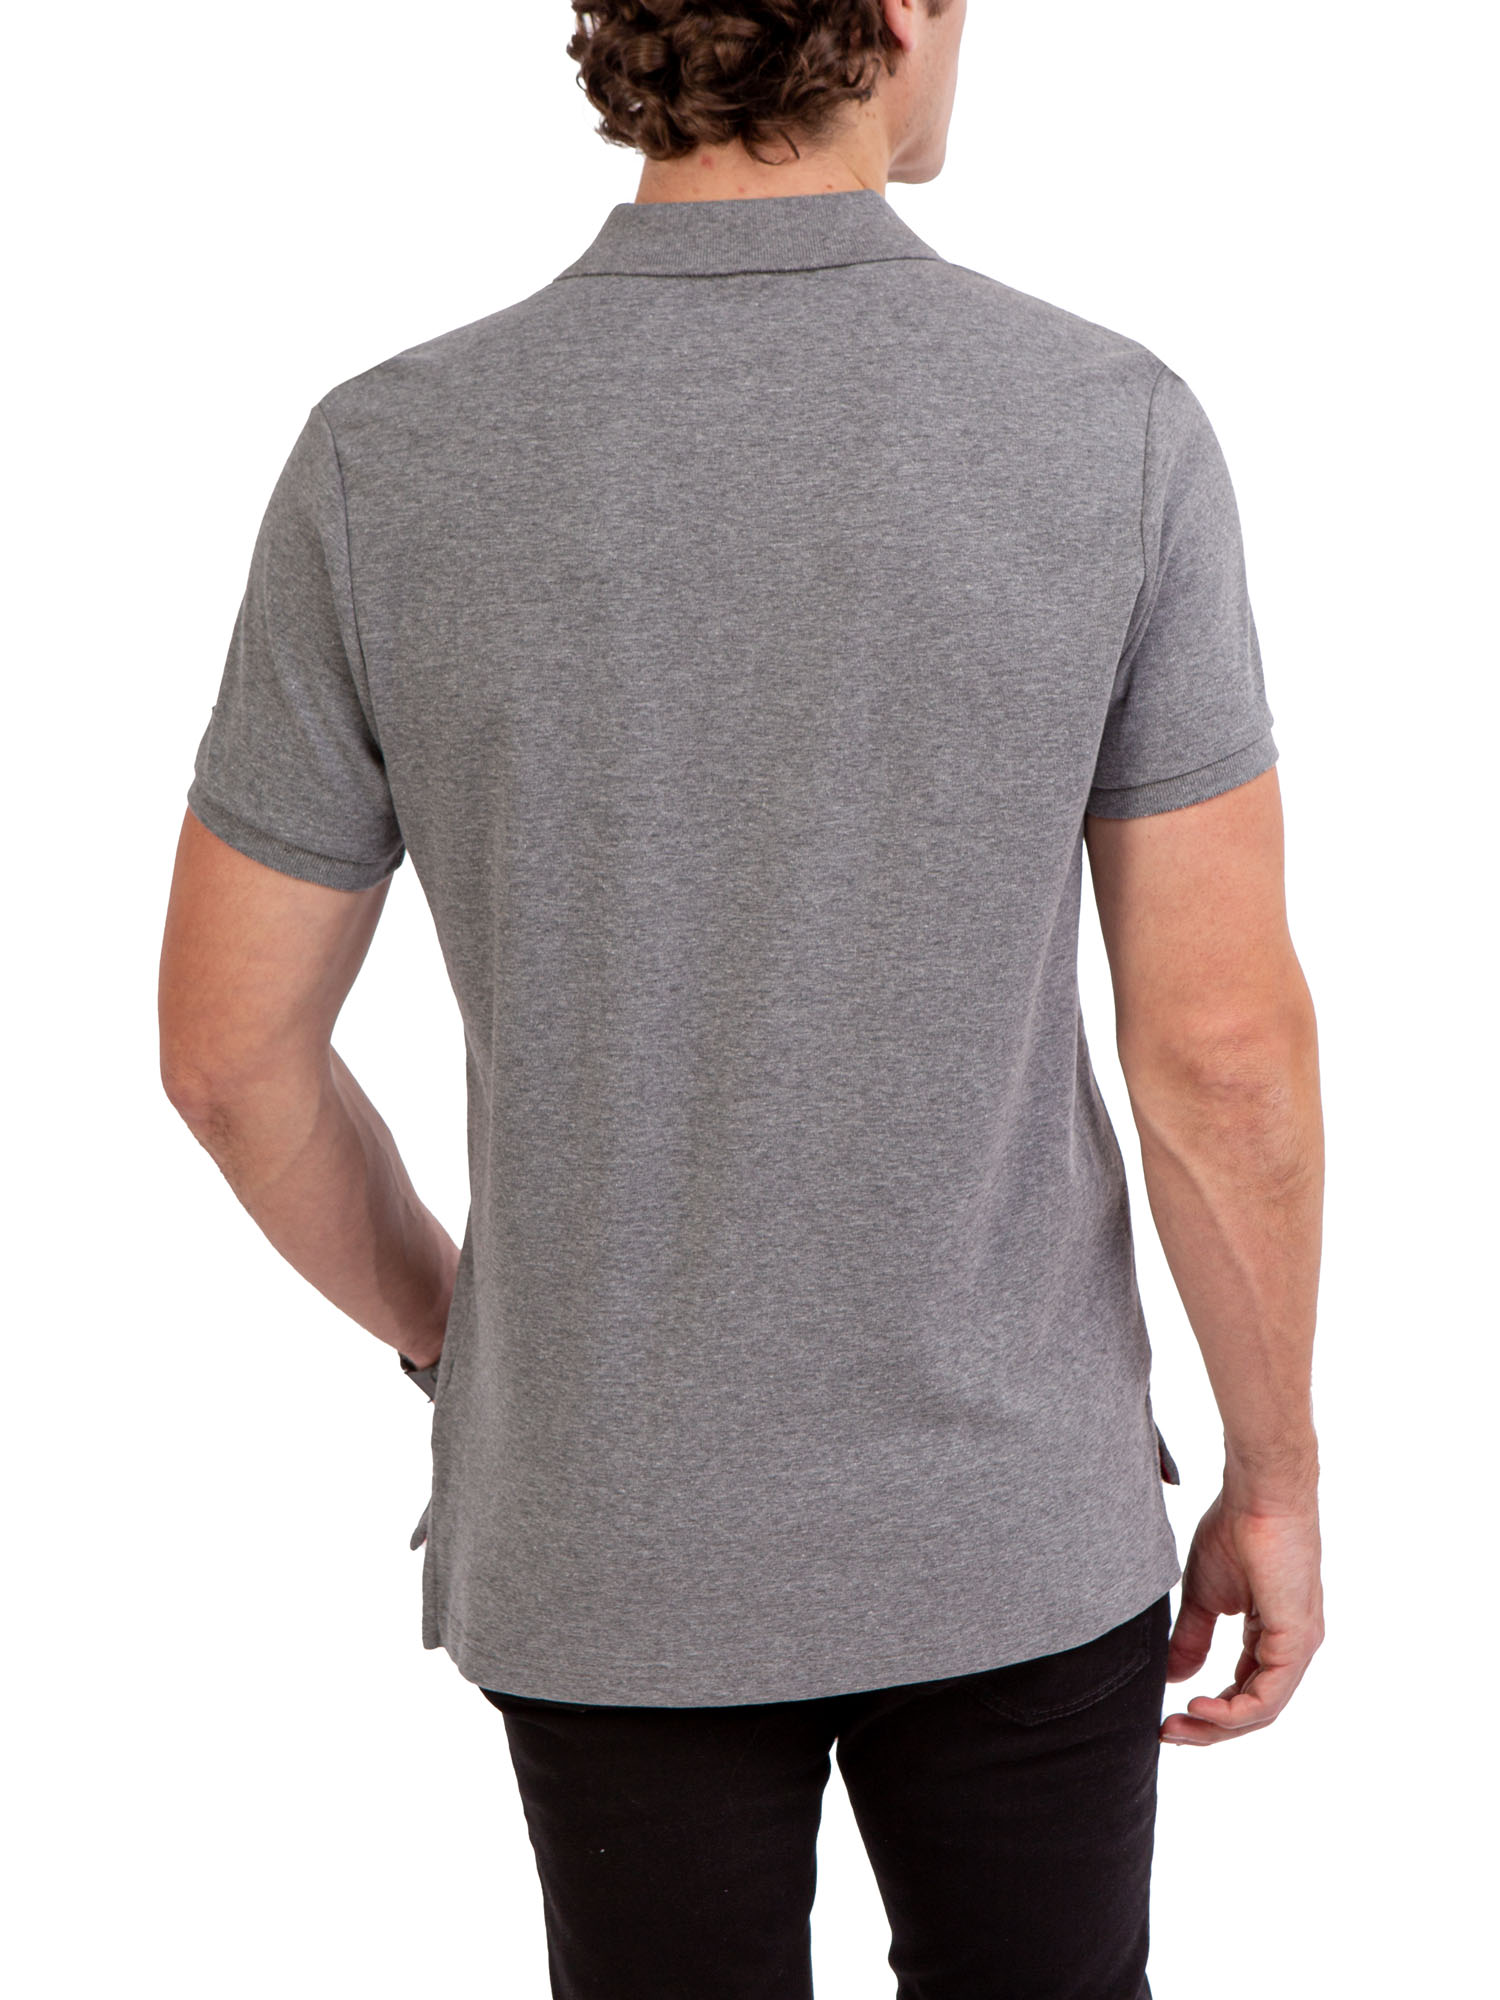 U.S. Polo Assn. Men's Interlock Polo Shirt - image 3 of 4